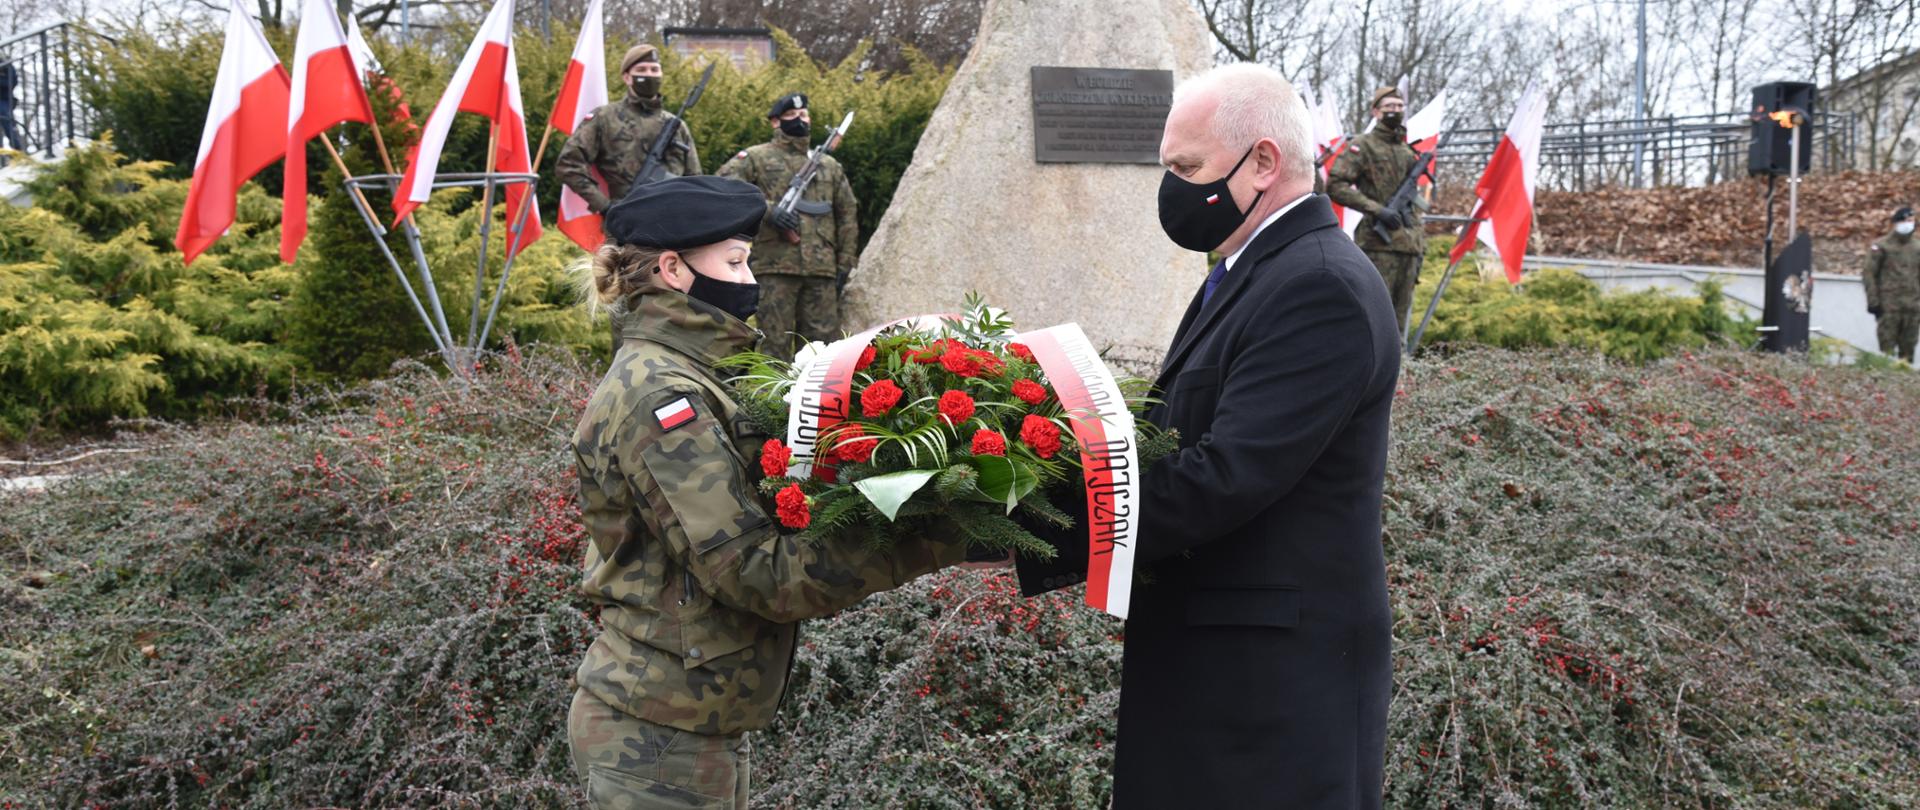 Wojewoda przekazuje żołnierce wieniec z biało-czerwonych kwiatów. W tle pomnik pamięci Żołnierzy Wyklętych (kamień z tablicą, na jego szczycie orzeł z rozpostartymi skrzydłami). Obok pomnika biało-czerwone flagi i warta honorowa żołnierzy 